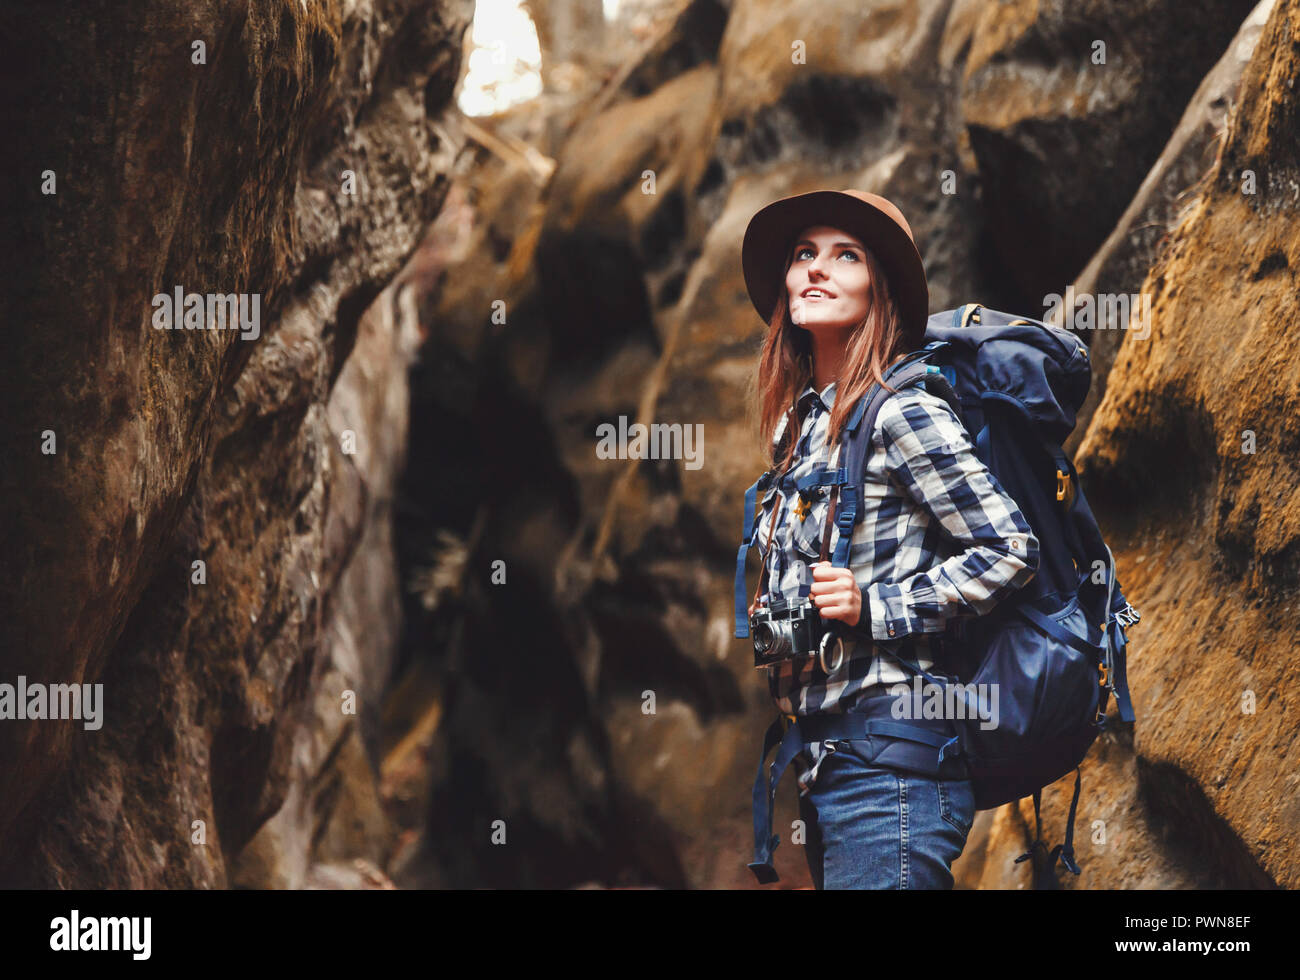 Reisen junge Frau mit braunen Hut, Plaid Shirt, Jeans und braune Stiefel  mit Rucksack wandern im Canyon mit Moos auf Steinen nach dem Wandern,  Konzept reisen Stockfotografie - Alamy